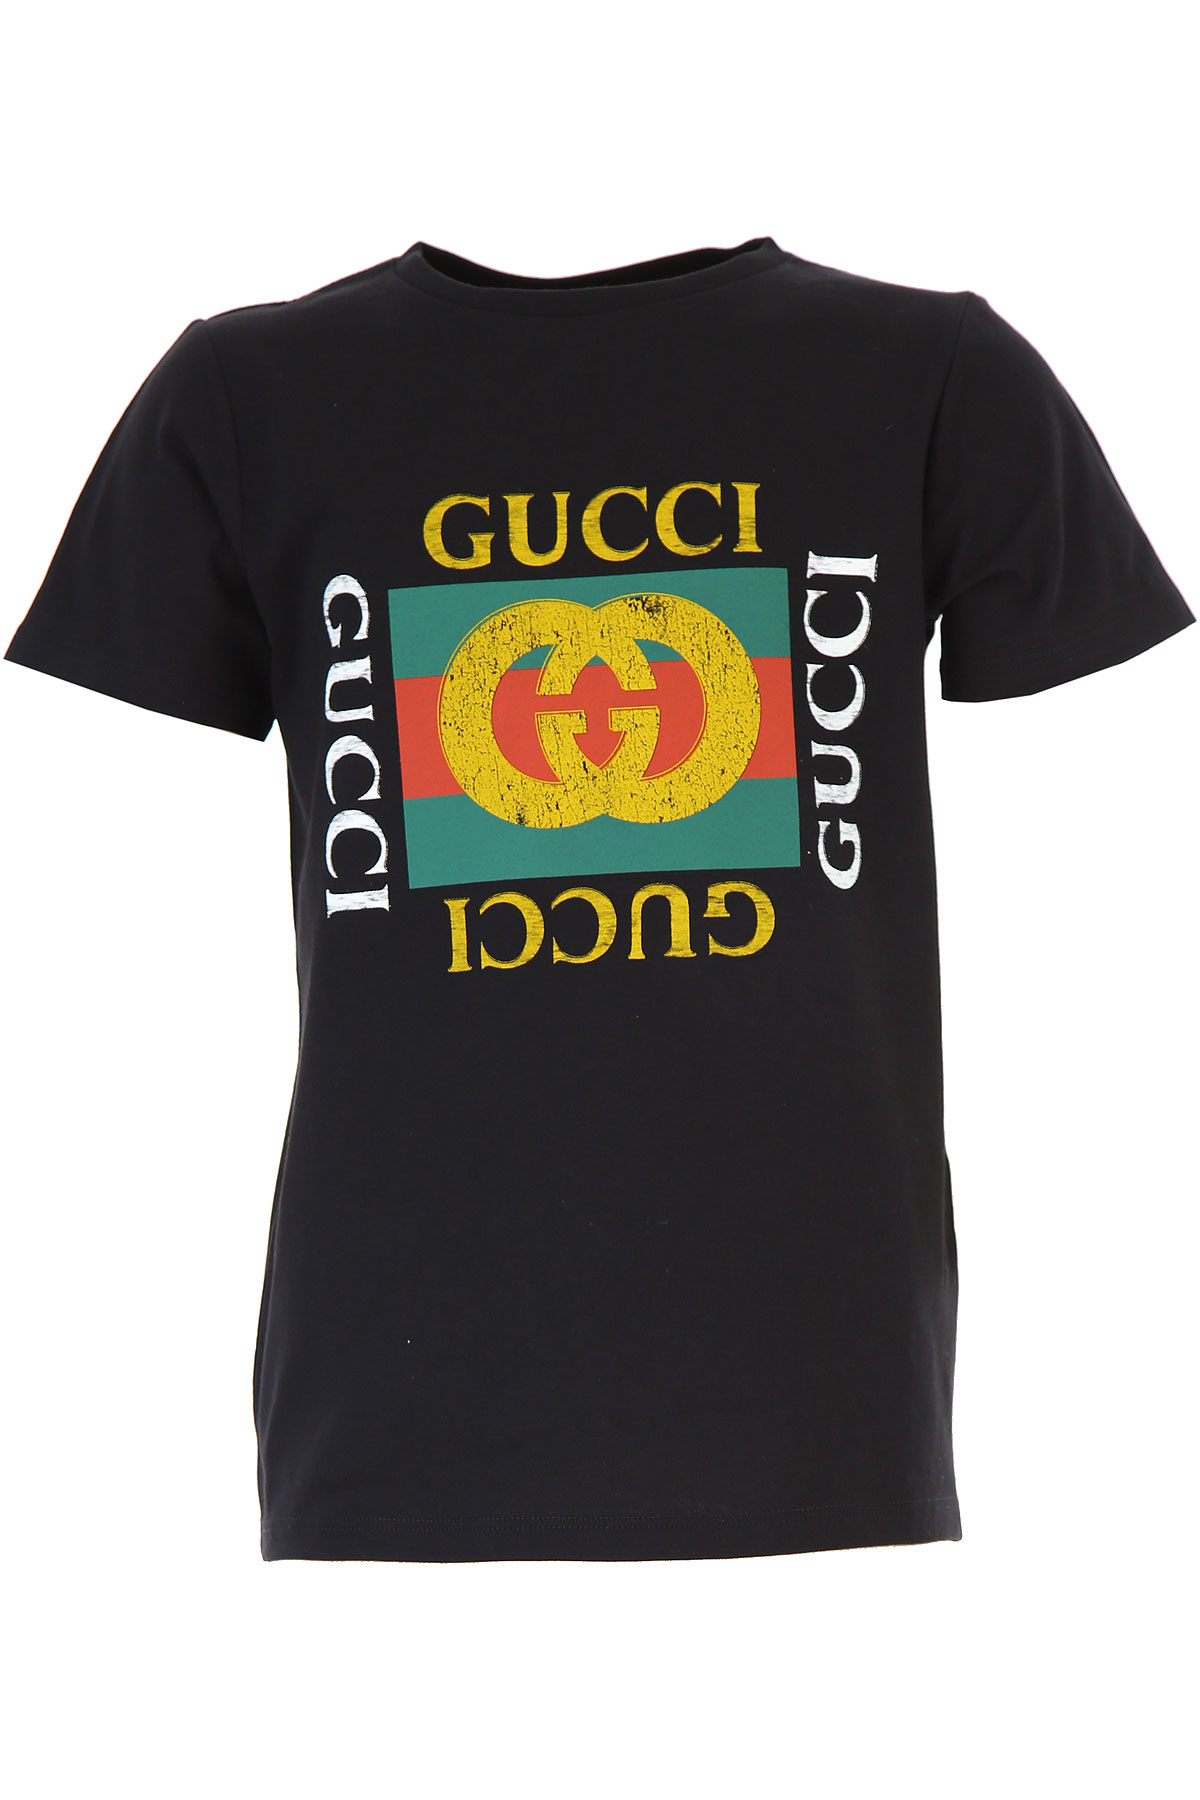 Gucci Kinder T-Shirt für Jungen, Schwarz, Baumwolle, 2017, 6Y 8Y